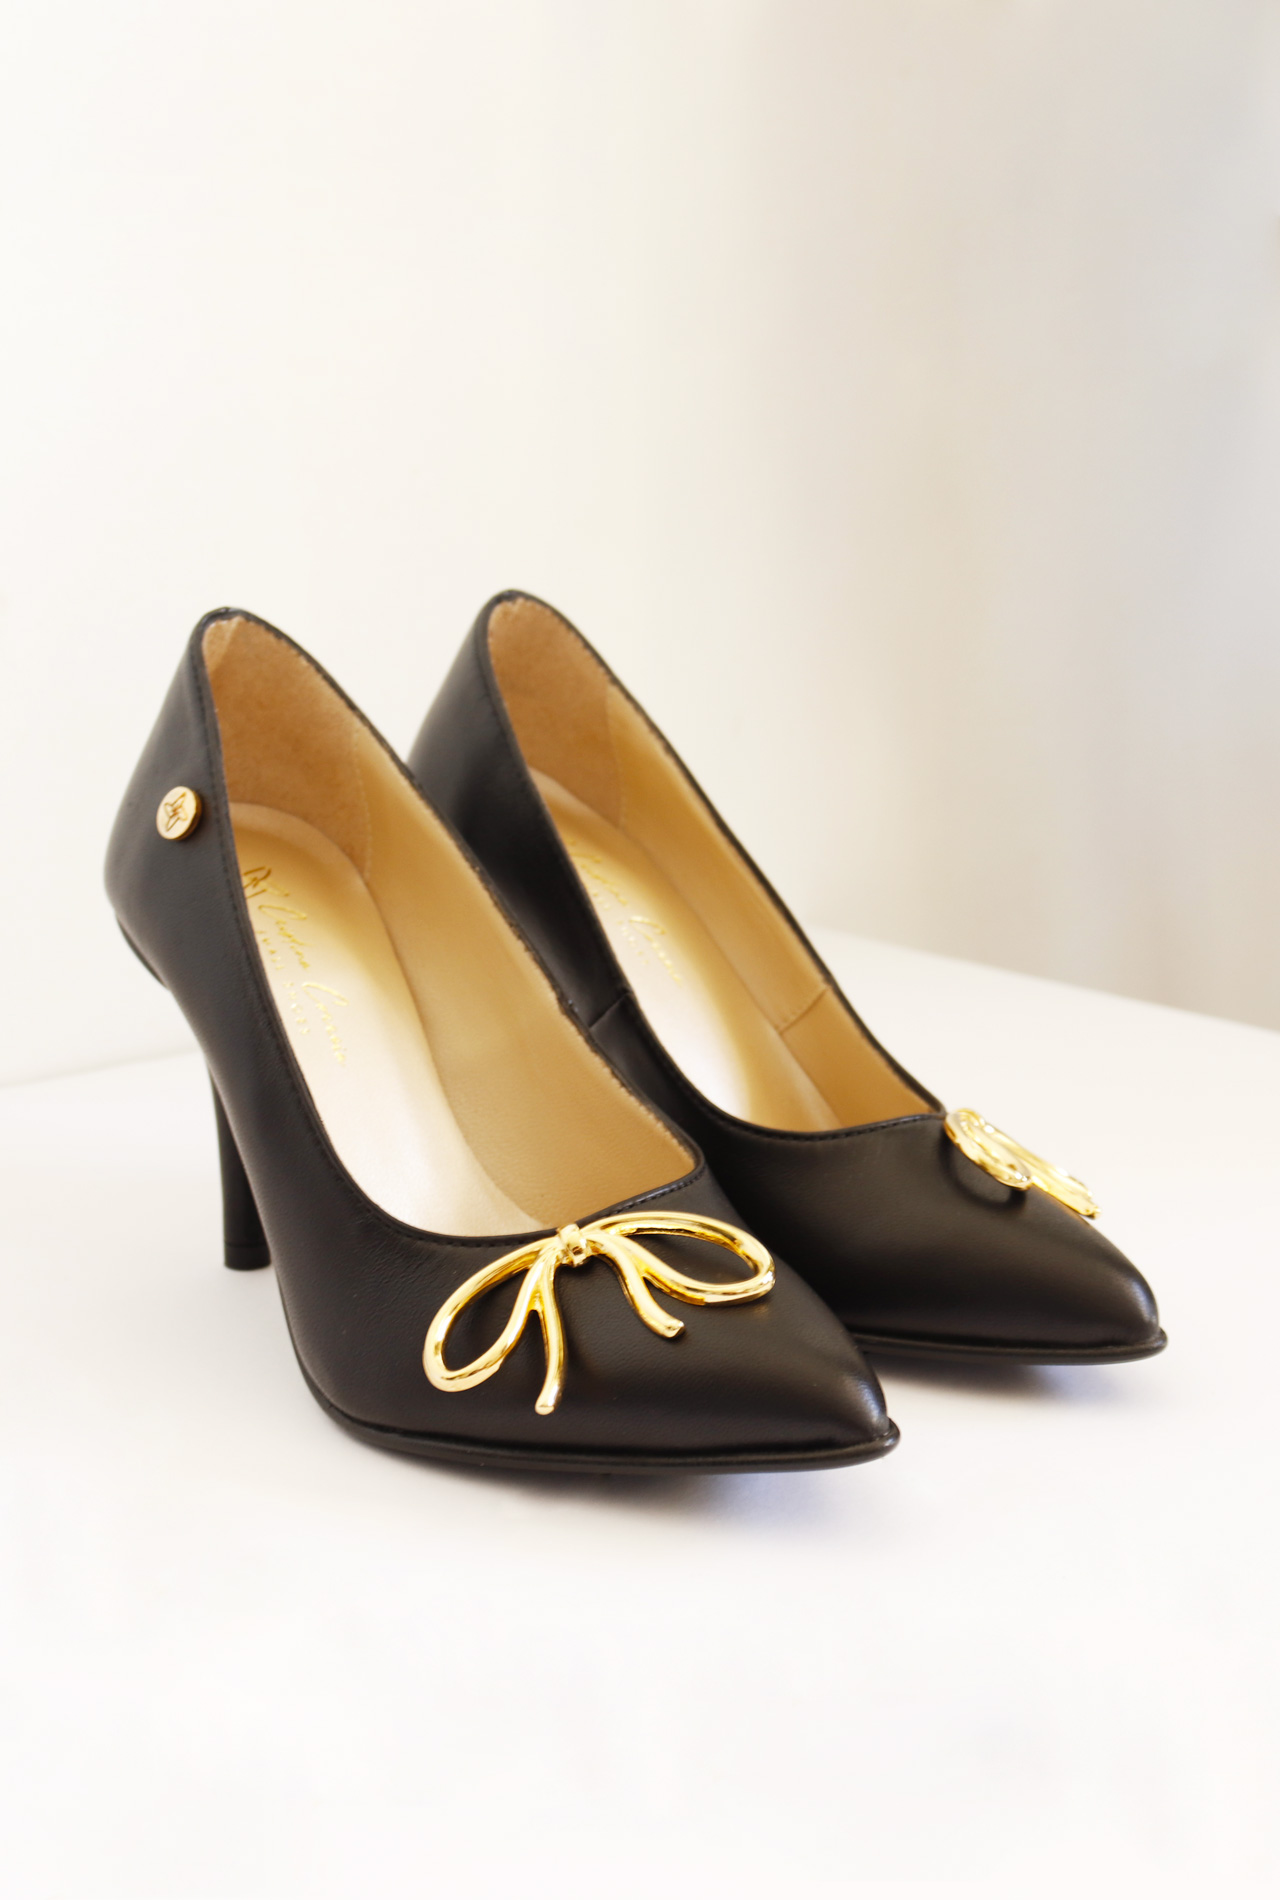 Black Patent Leather Stiletto  Small Shoes by Cristina Correia